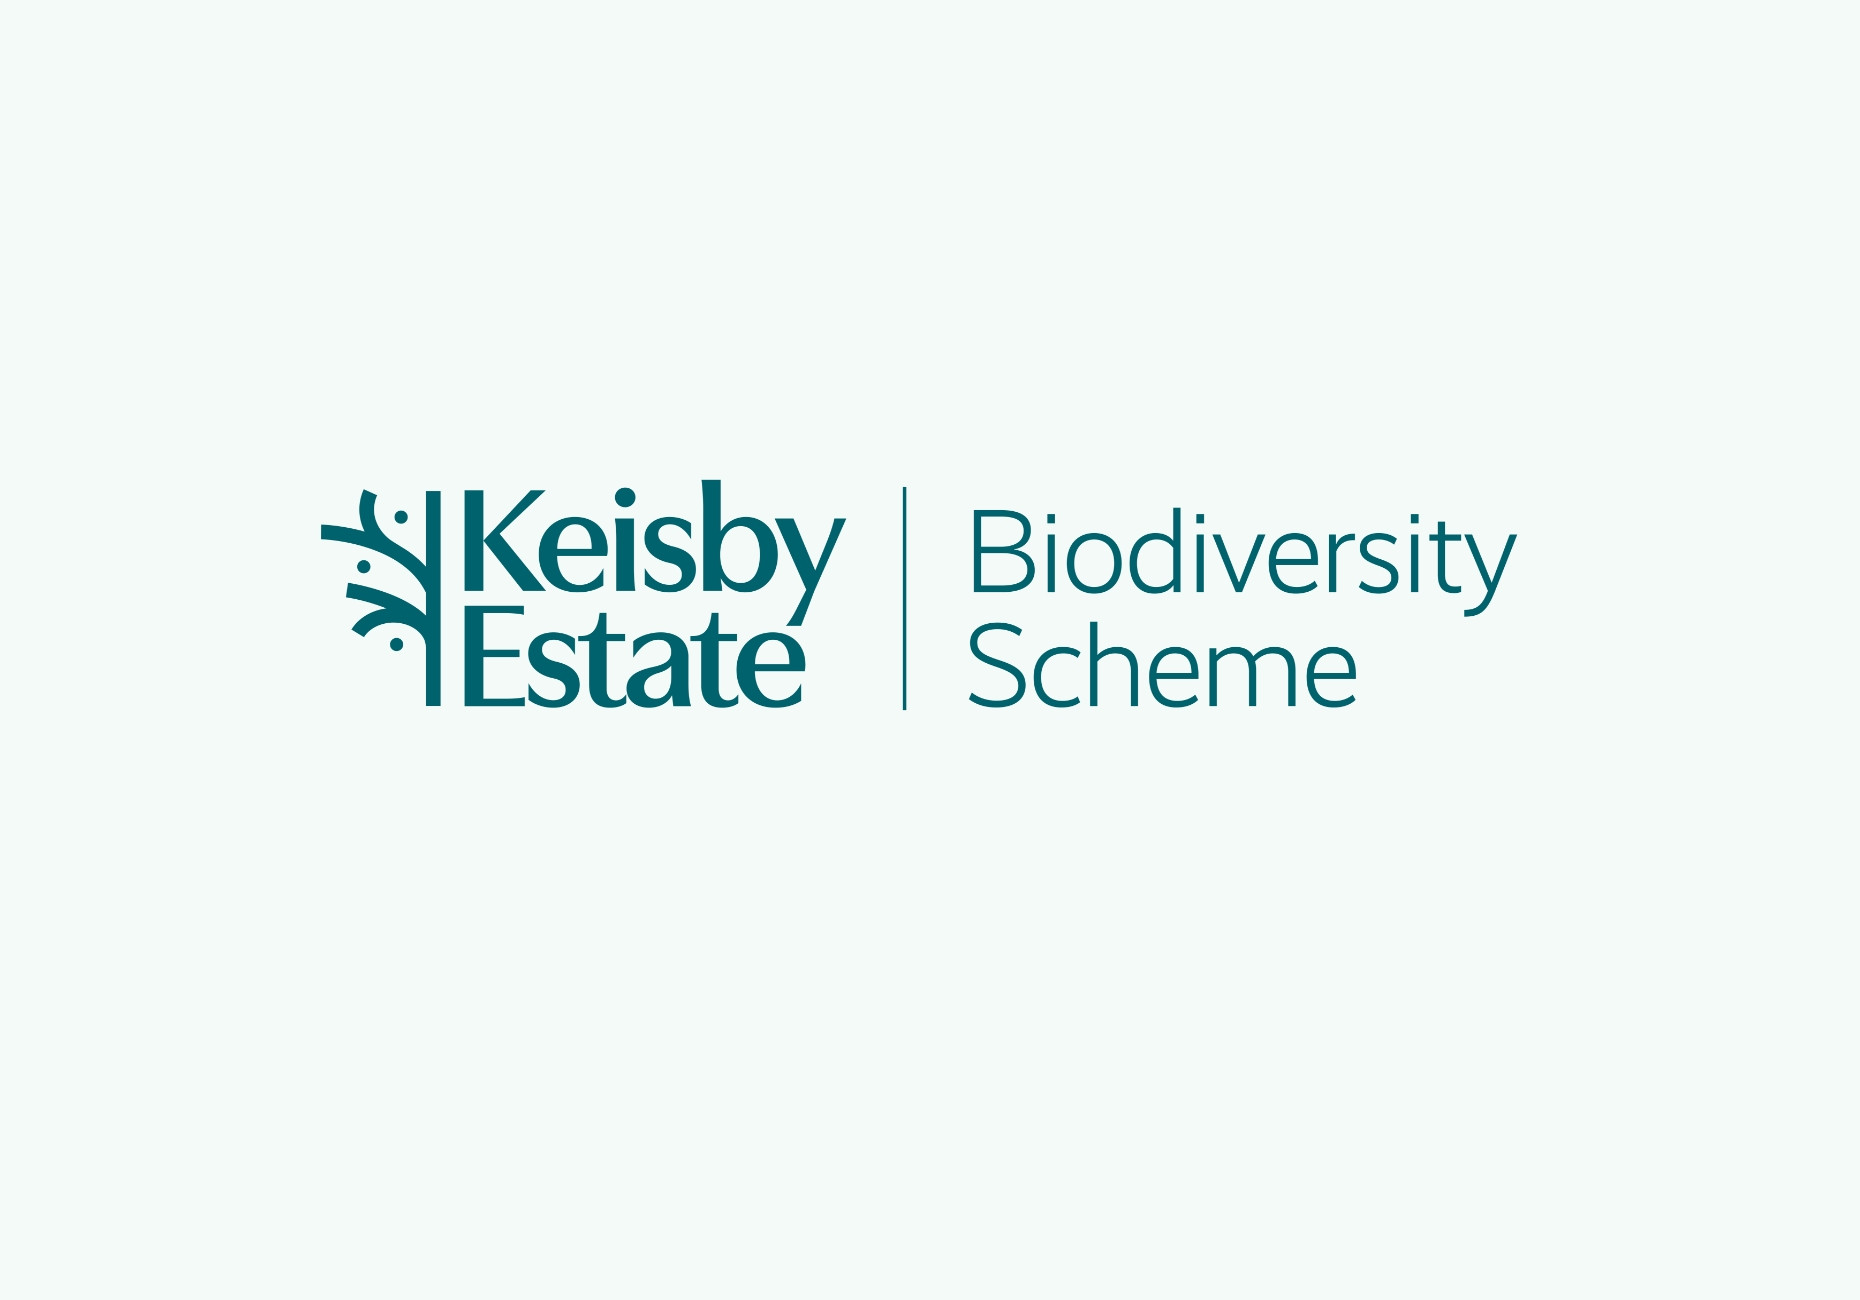 Keisby Estate Biodiversity Scheme branding design by Root Studio